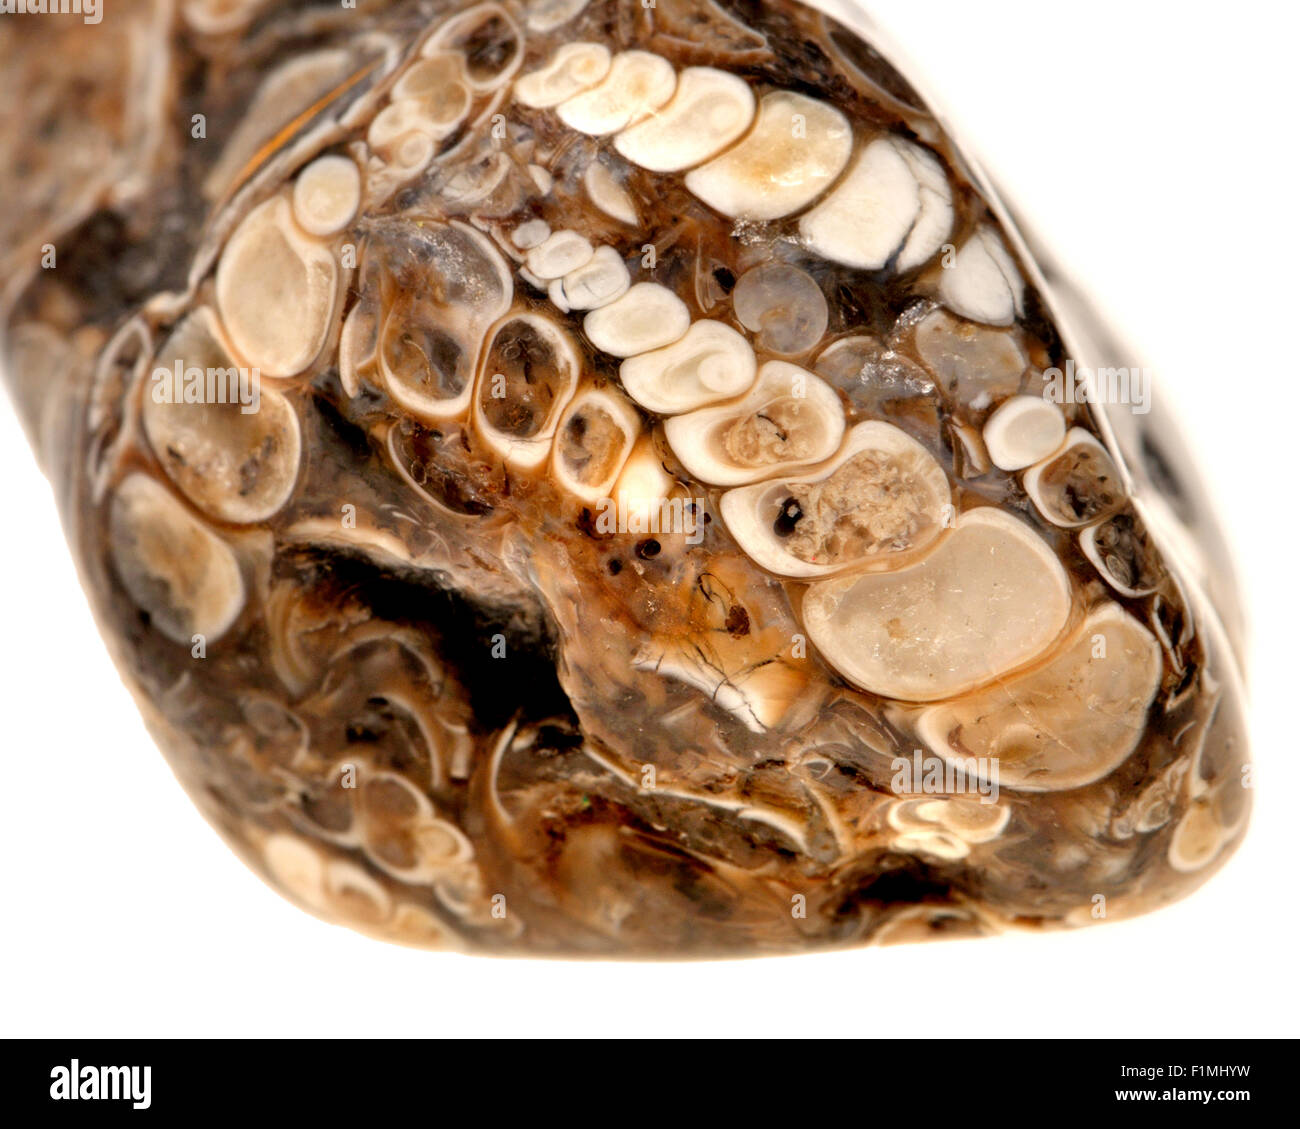 Agate Agate Turritella - de la Formation de Green River, Wyoming, contenant des escargots fossiles Banque D'Images